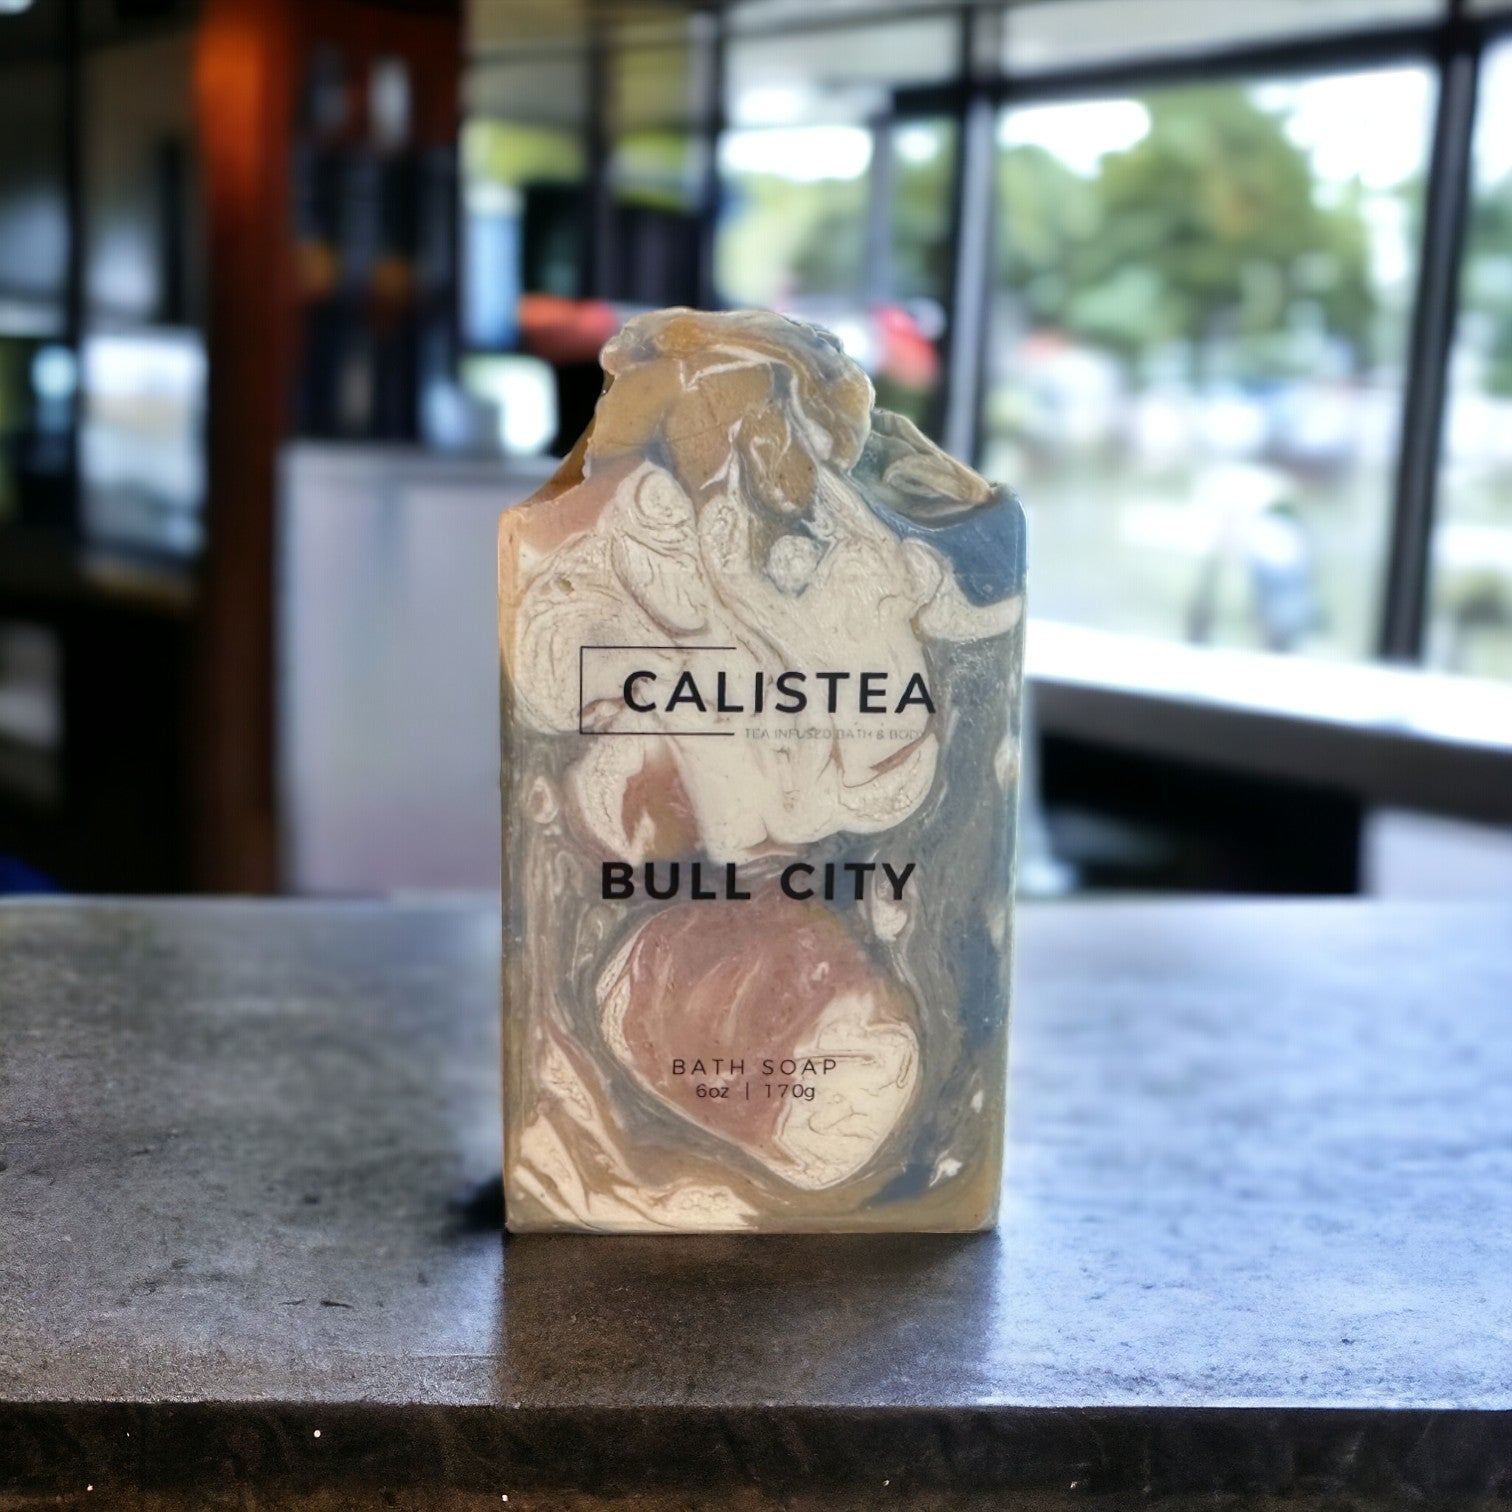 Bull City - Calistea